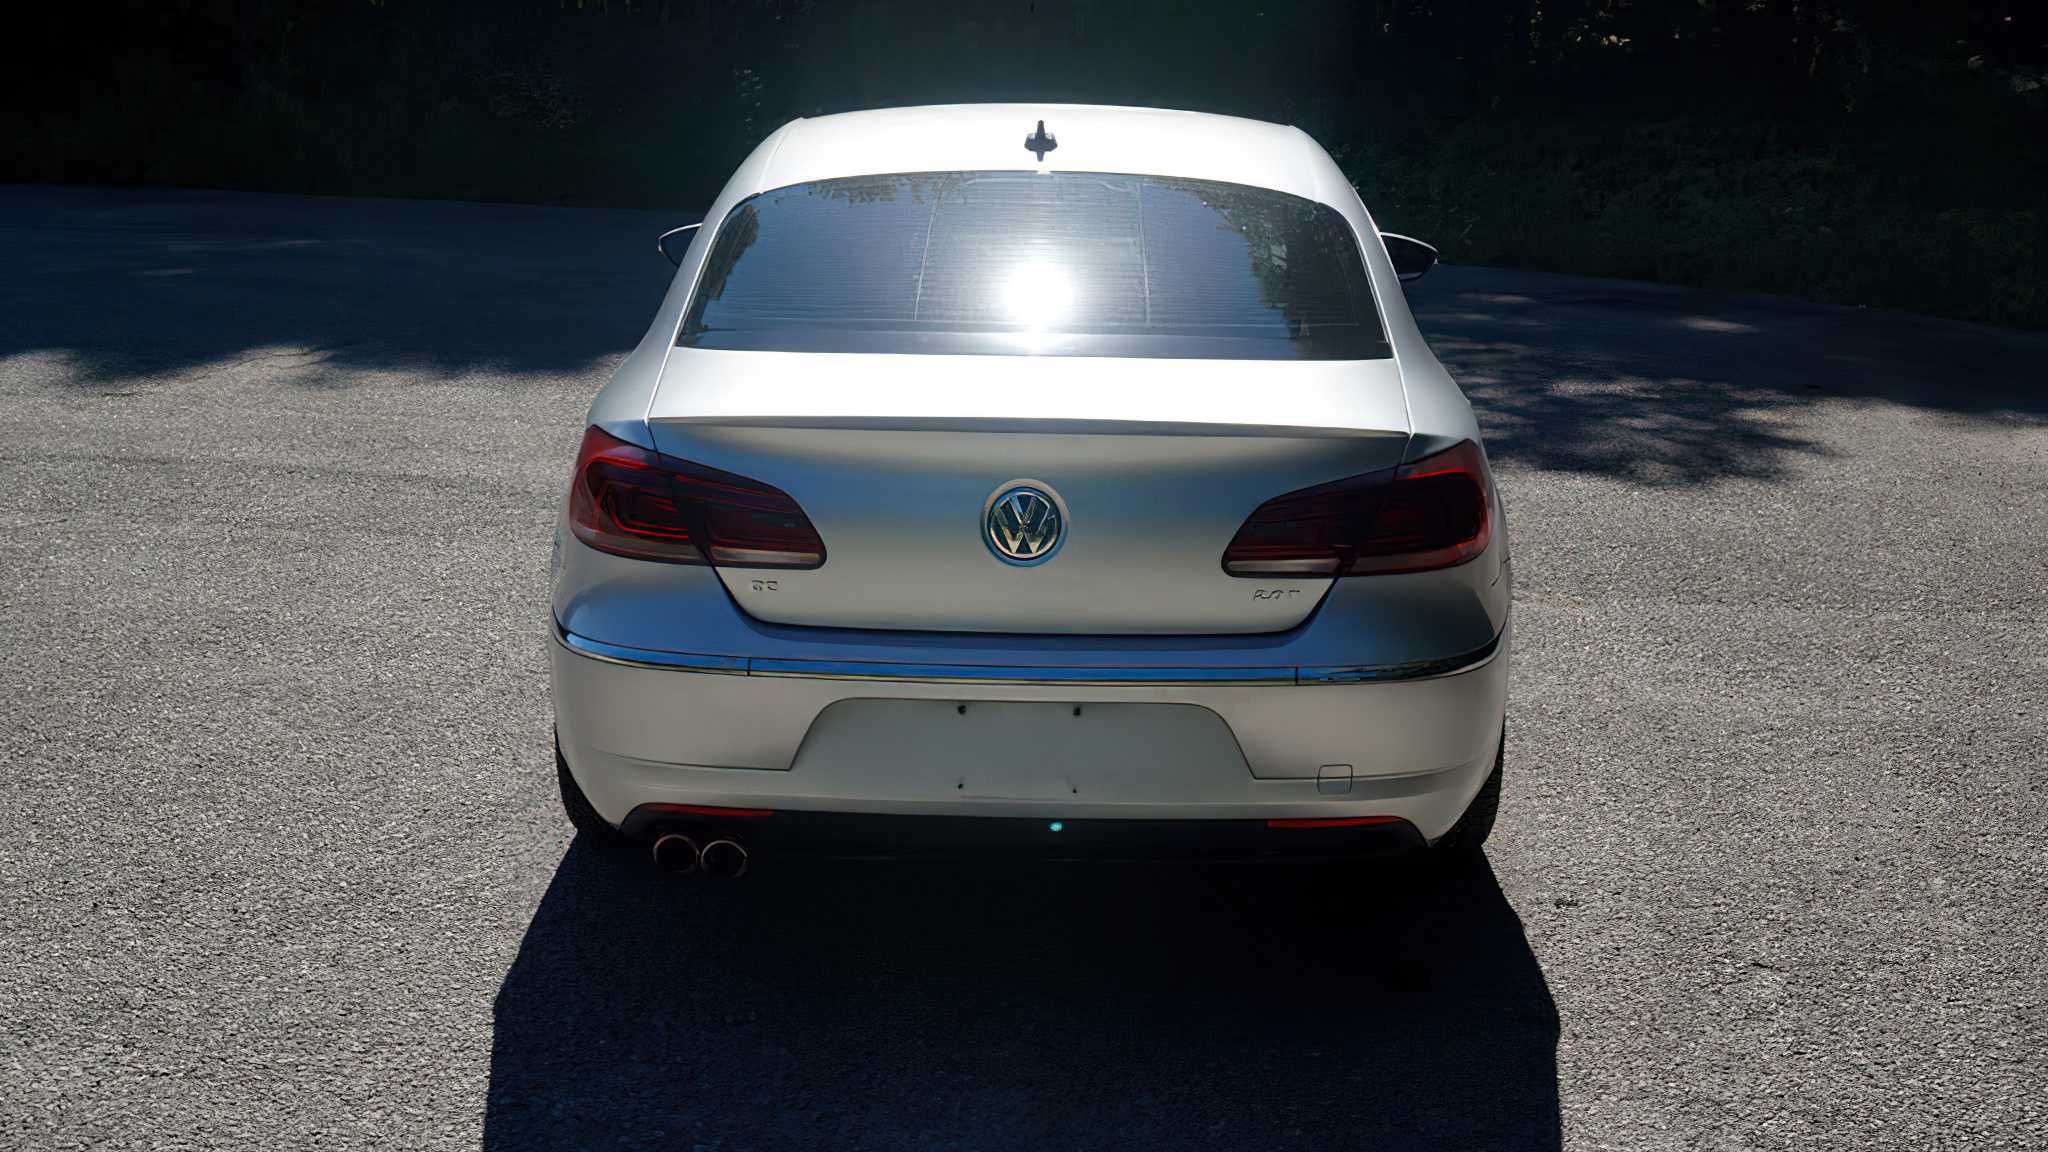 Volkswagen CC 2014